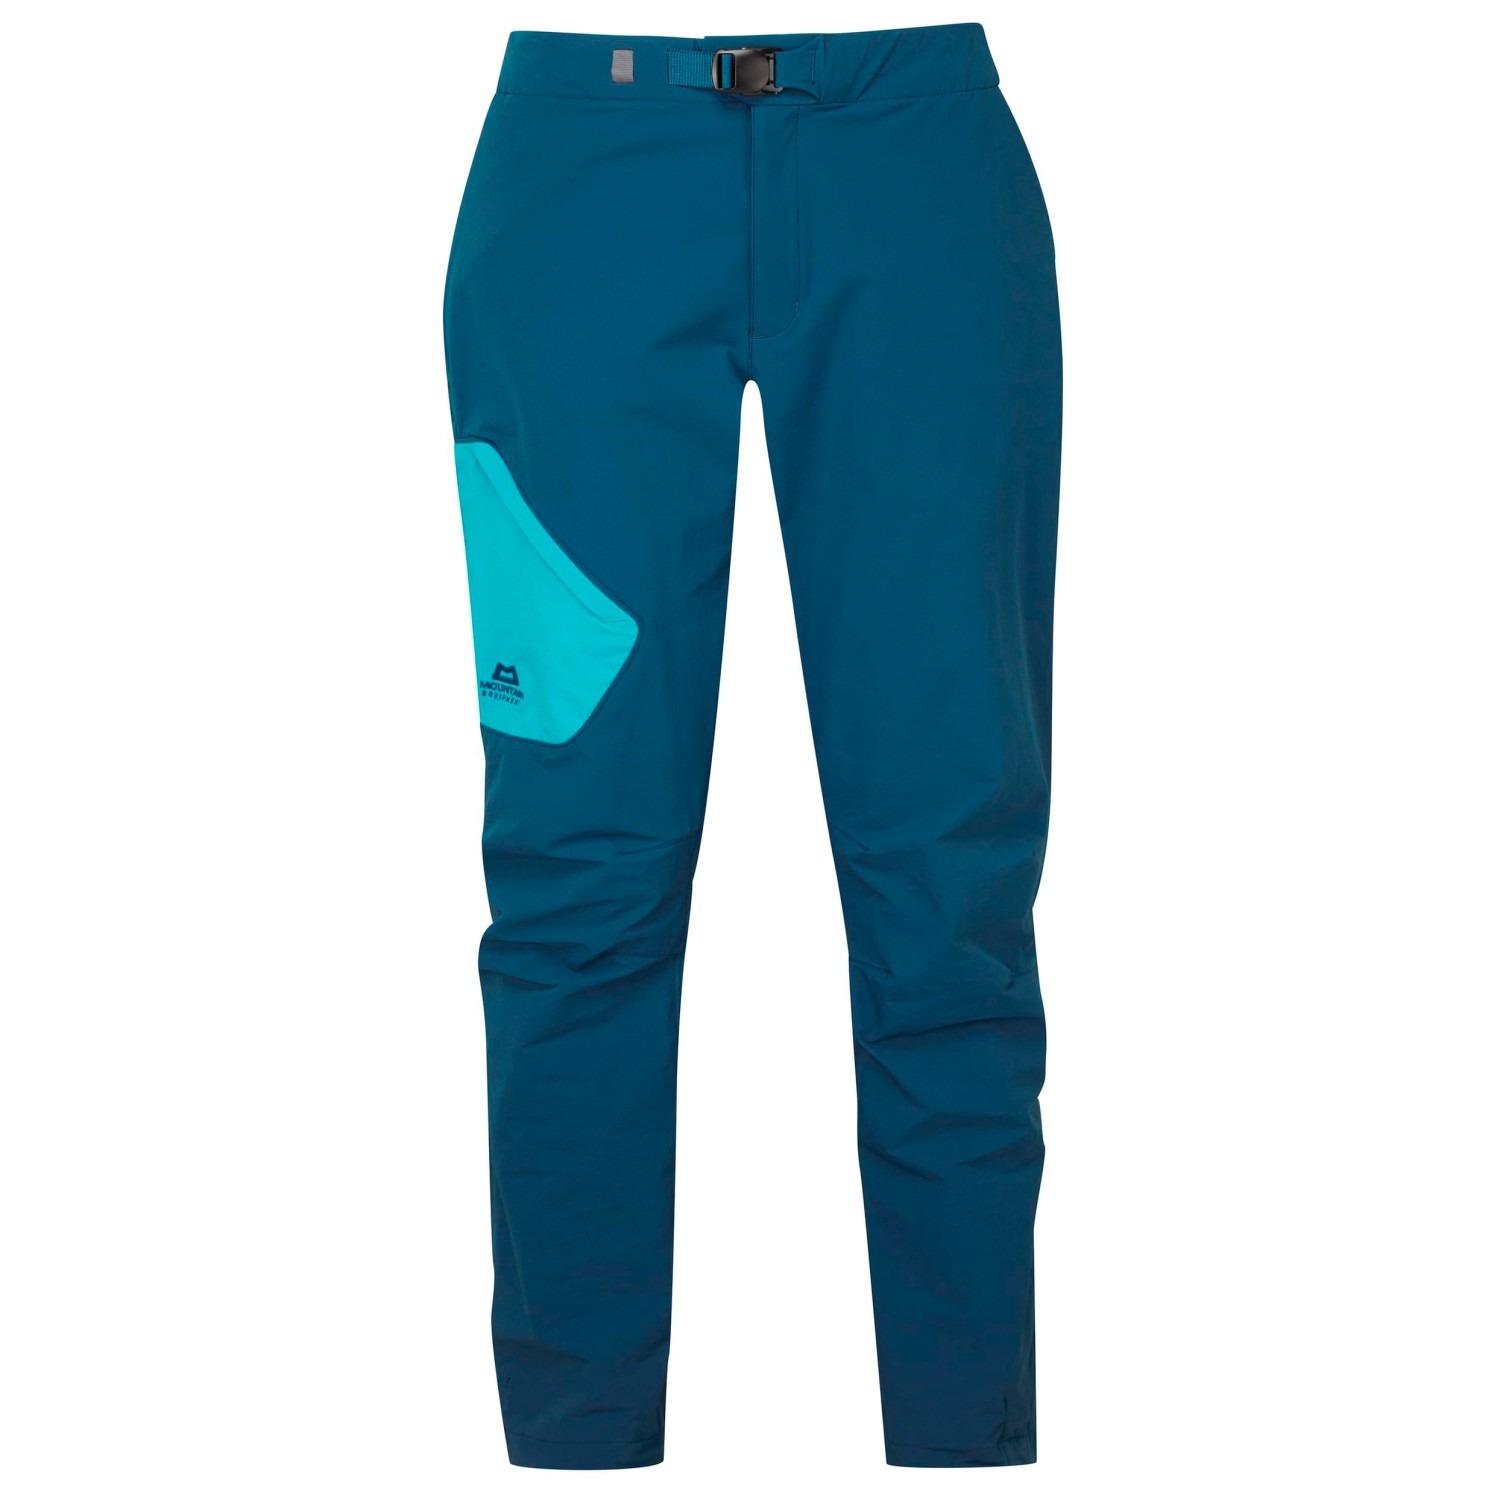 Трекинговые брюки Mountain Equipment Women's Comici 2 Pant, цвет Majolica Blue/Topaz